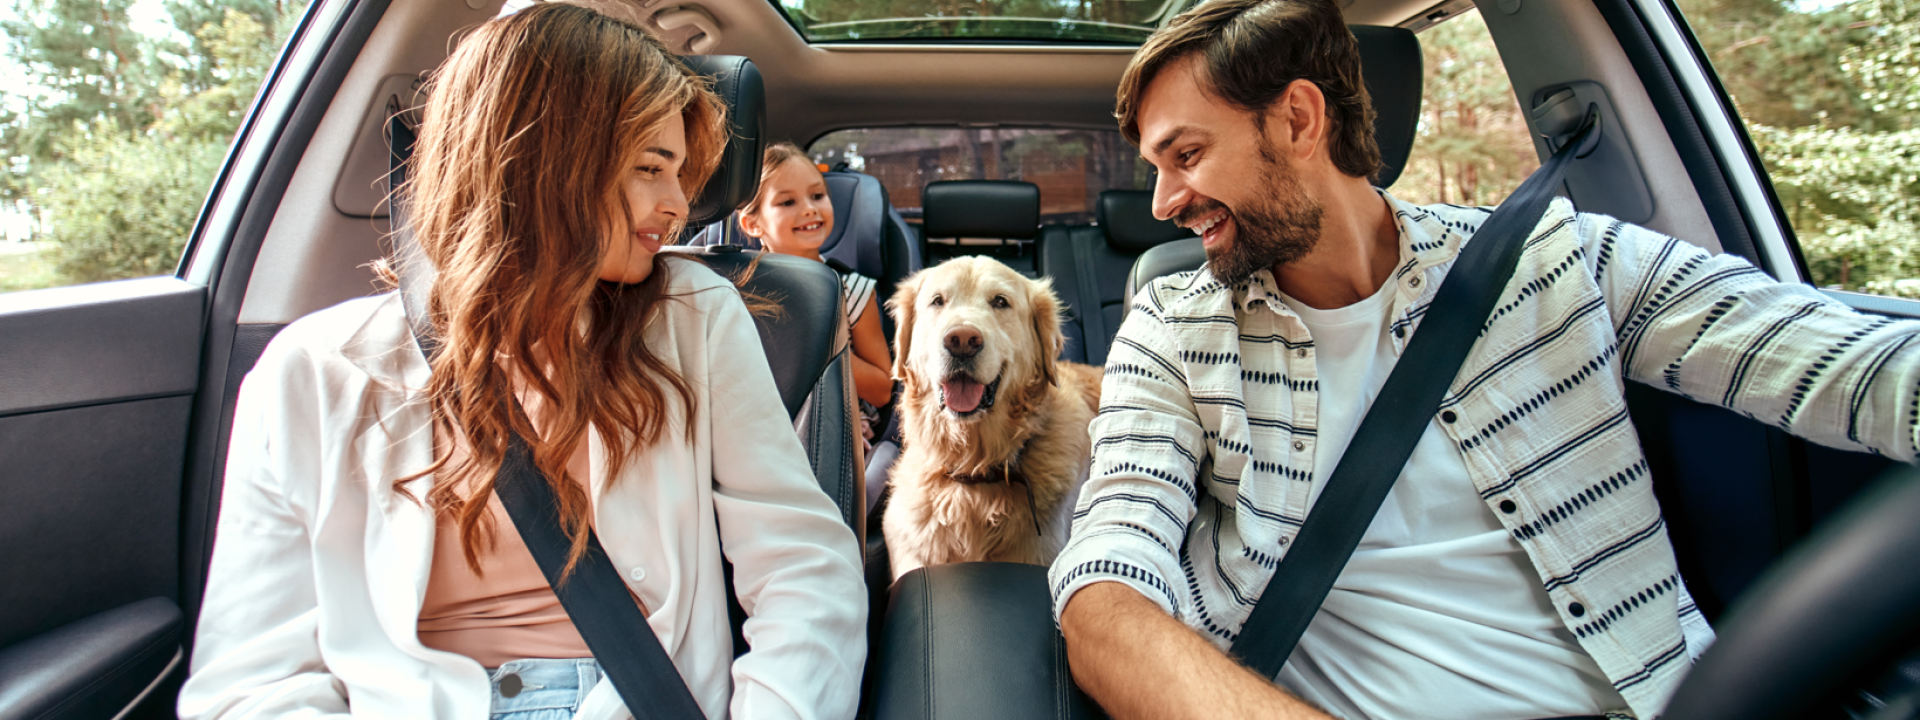 Familia dentro de un coche, mirando todos a su perro situado en el centro